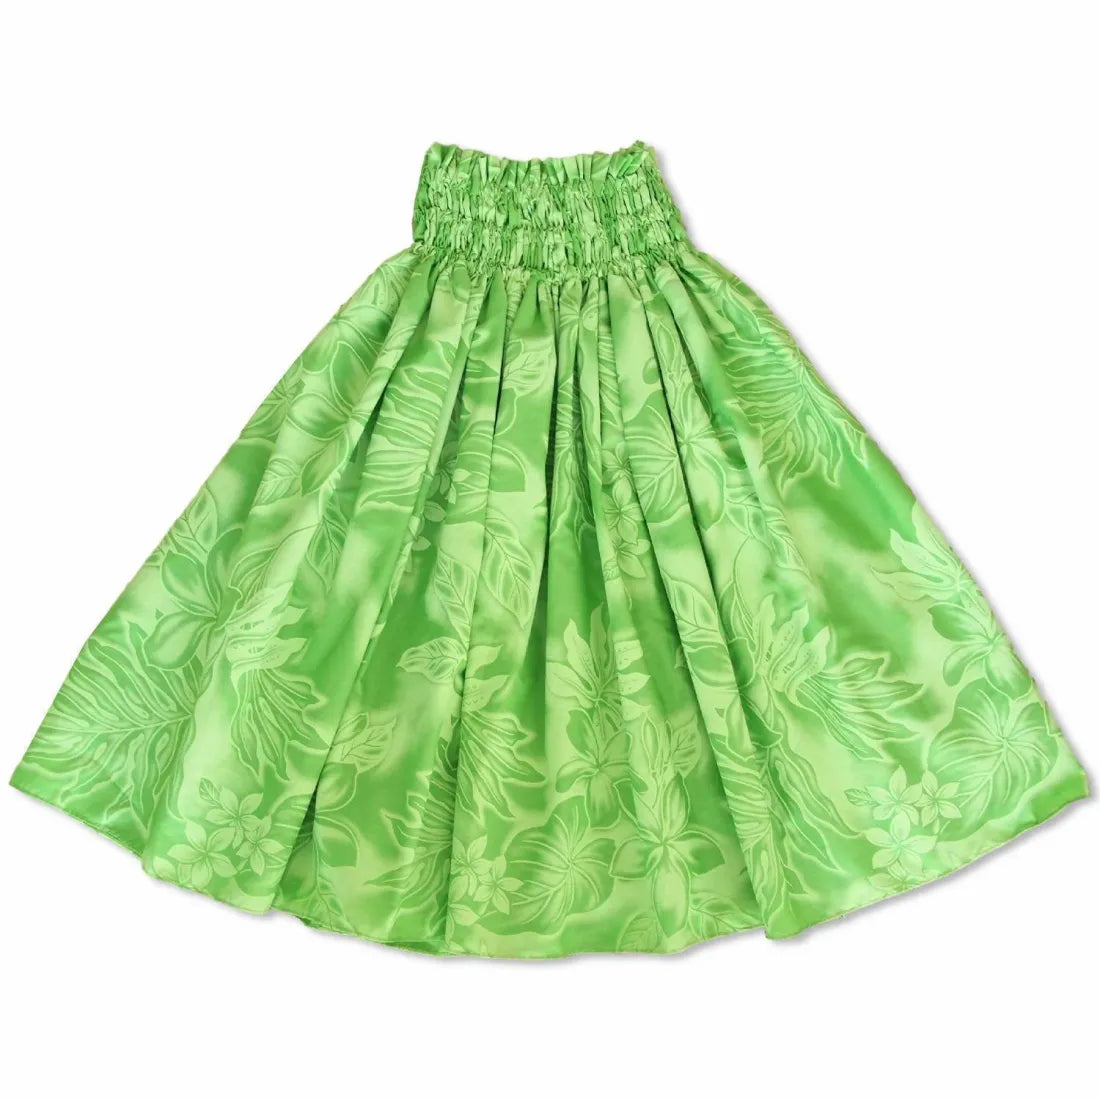 Plumeria Shadow Green Single Pa’u Hawaiian Hula Skirt - Made In Hawaii